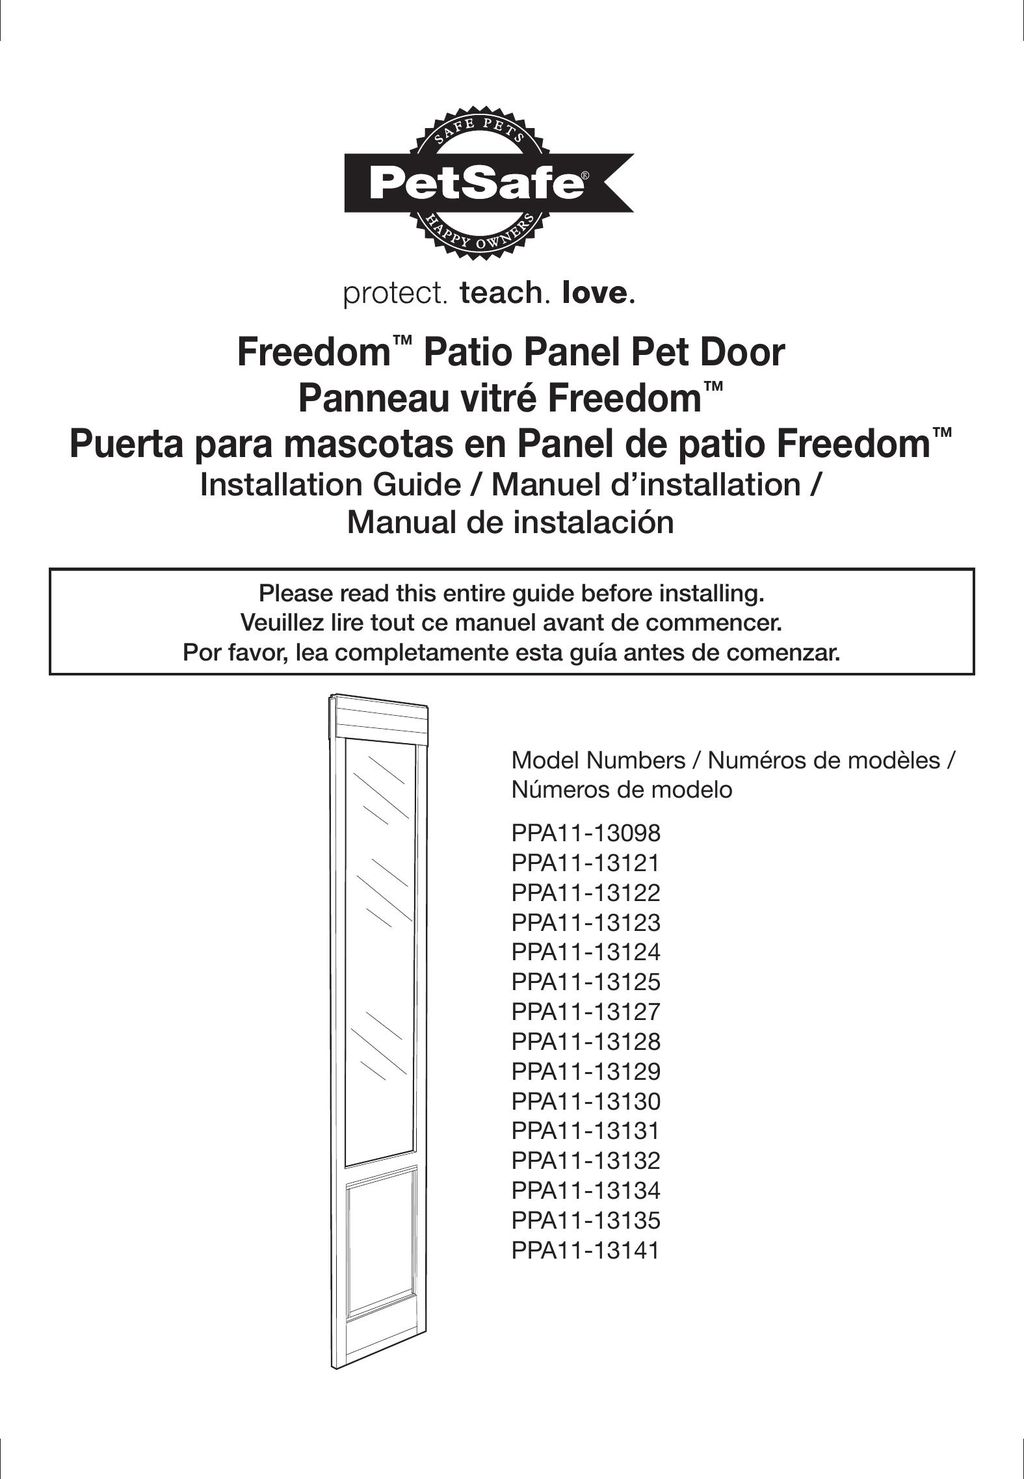 Petsafe PPA11-13132 Door User Manual